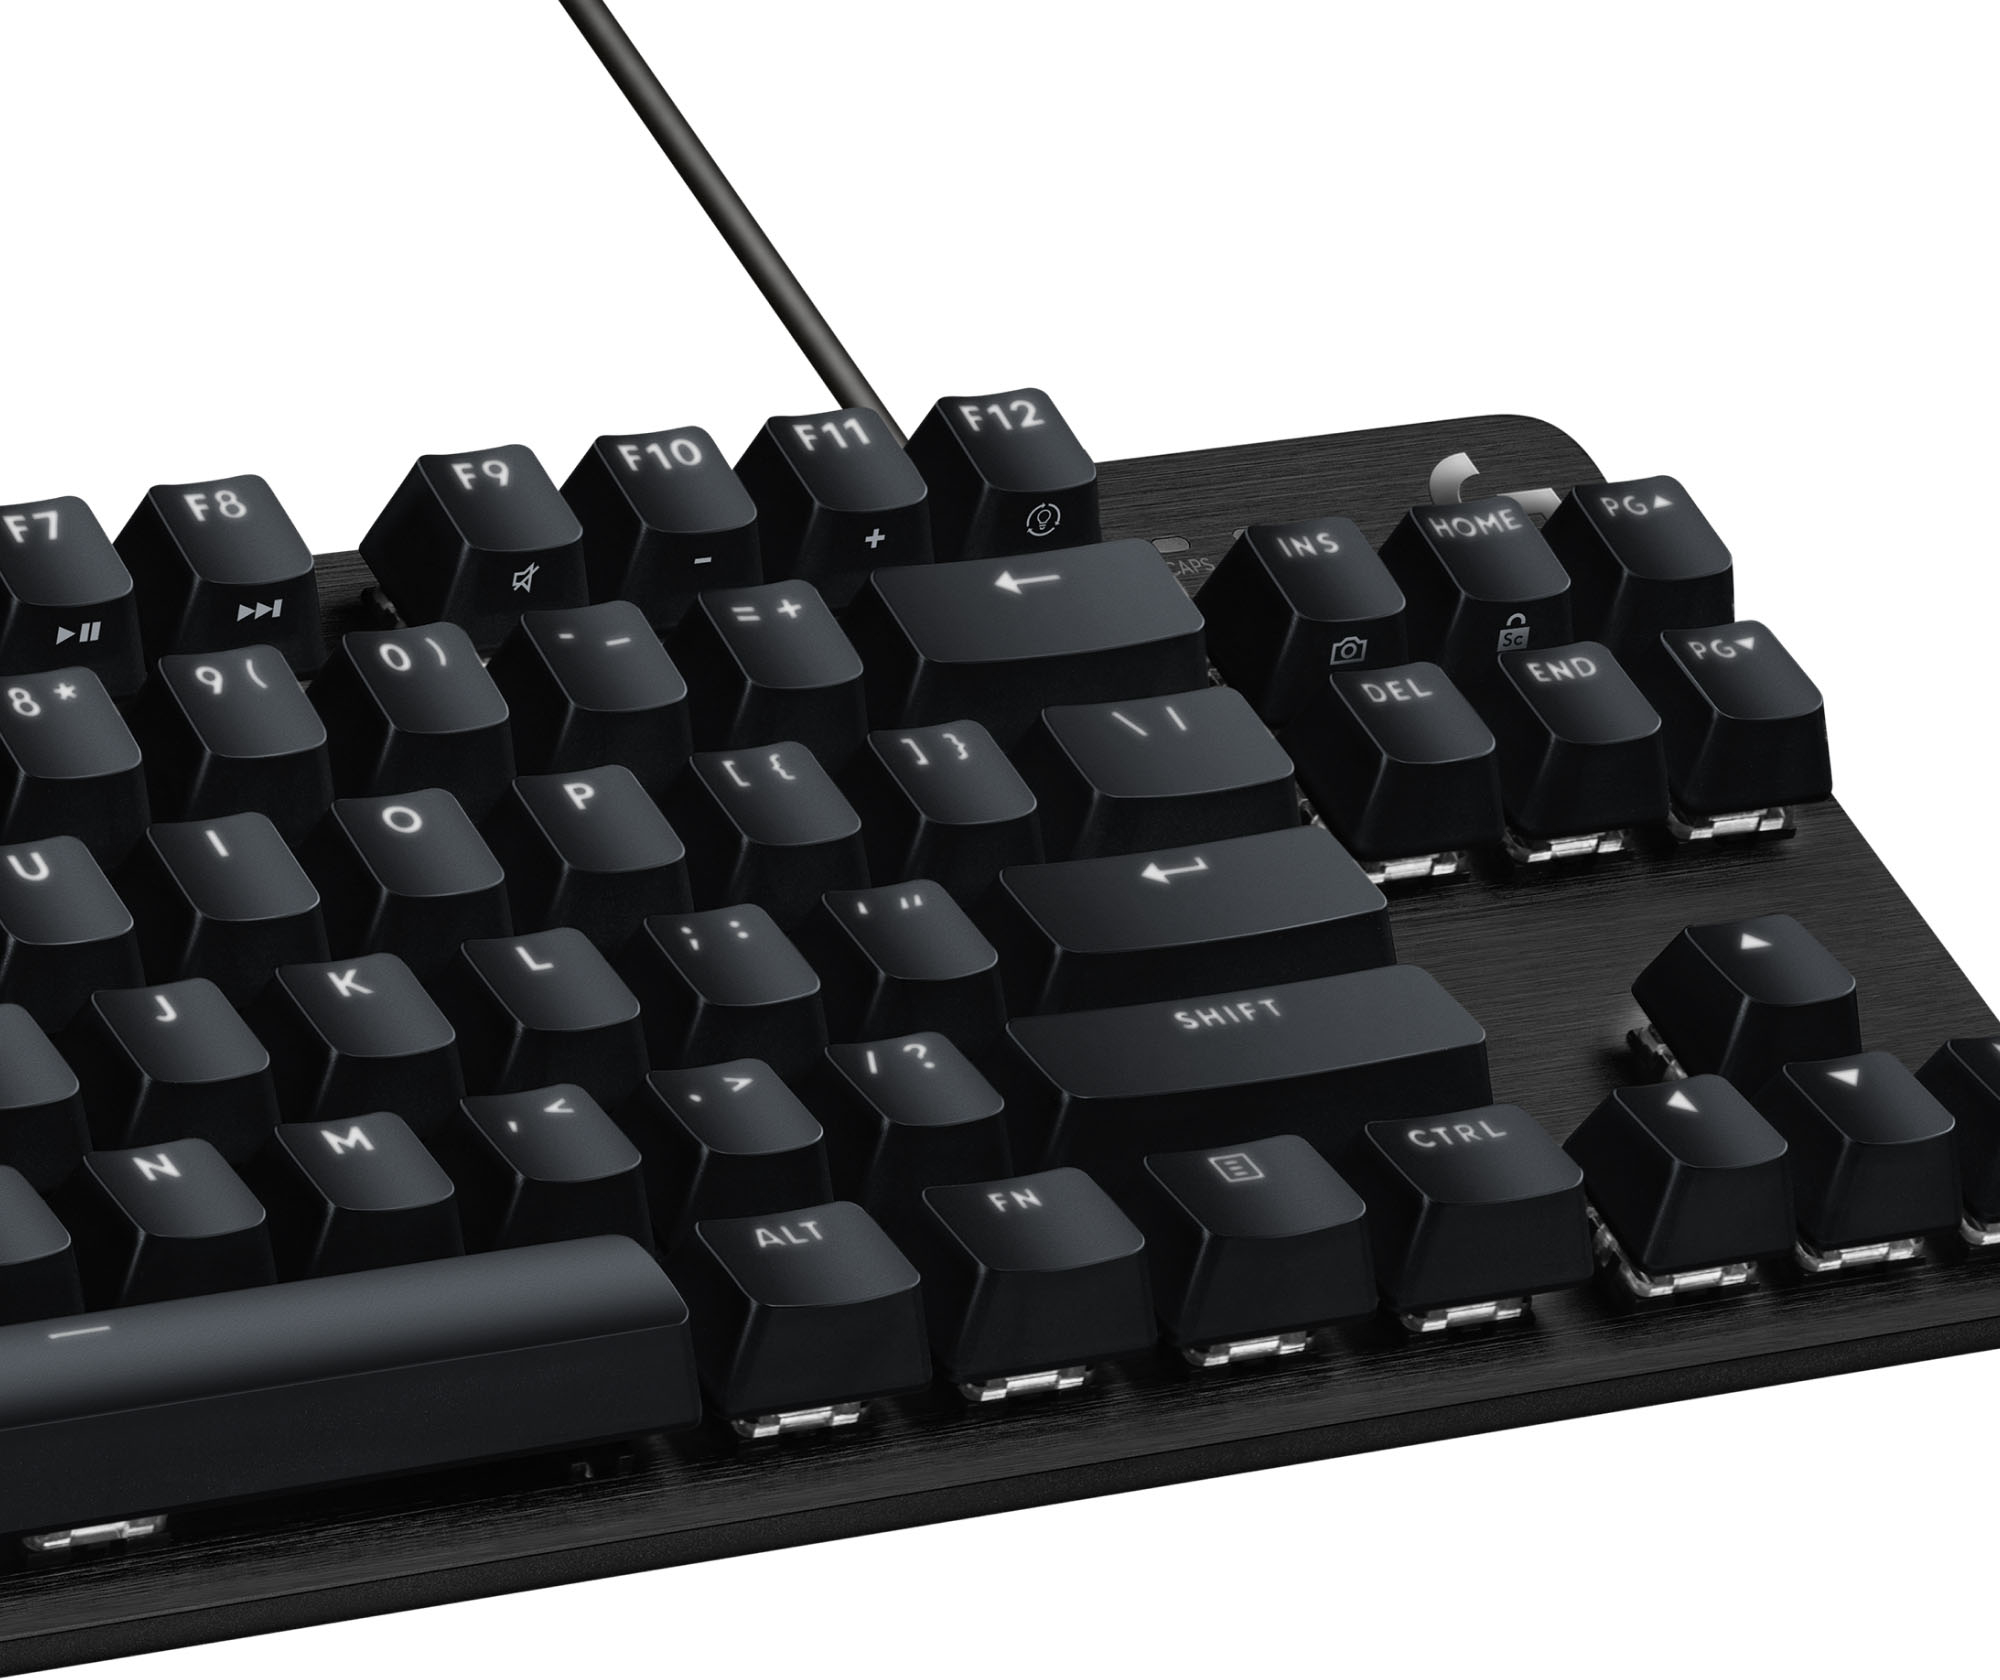 Logitech G G413 SE, G413 TKL SE Are New Affordable Mechanical Gaming  Keyboards